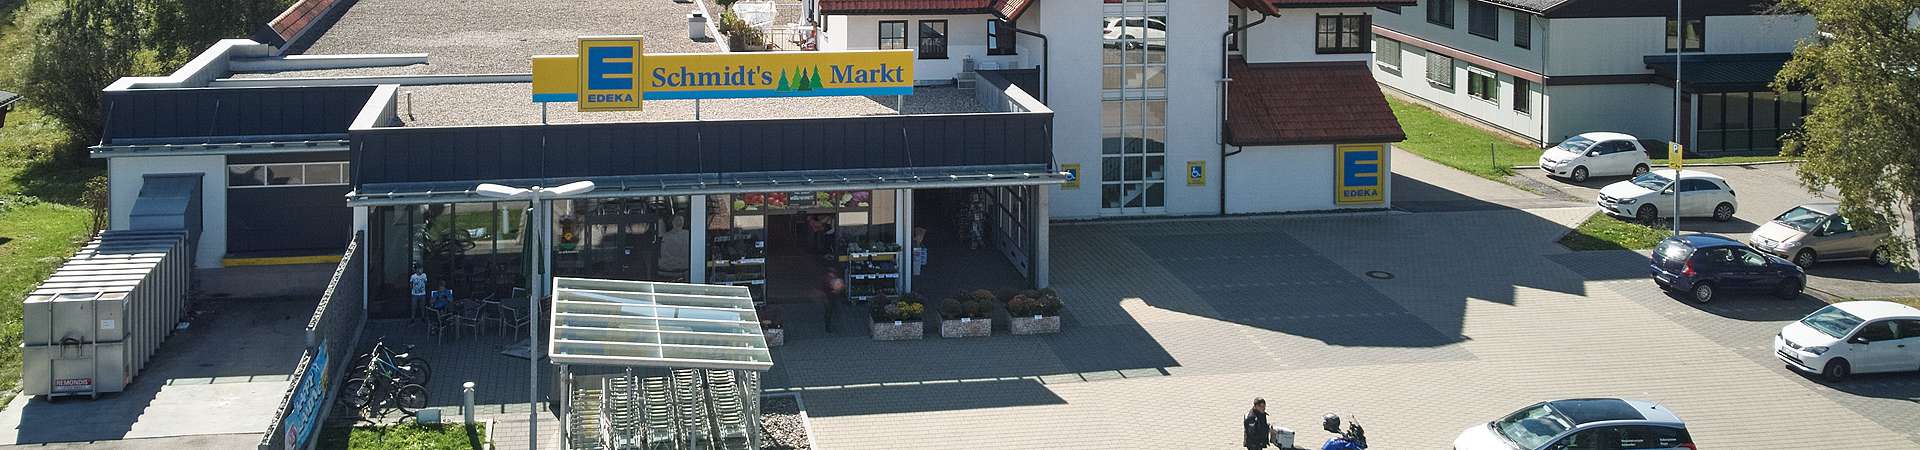 EDEKA Markt Schluchsee / Schmidts Märkte / Südschwarzwald